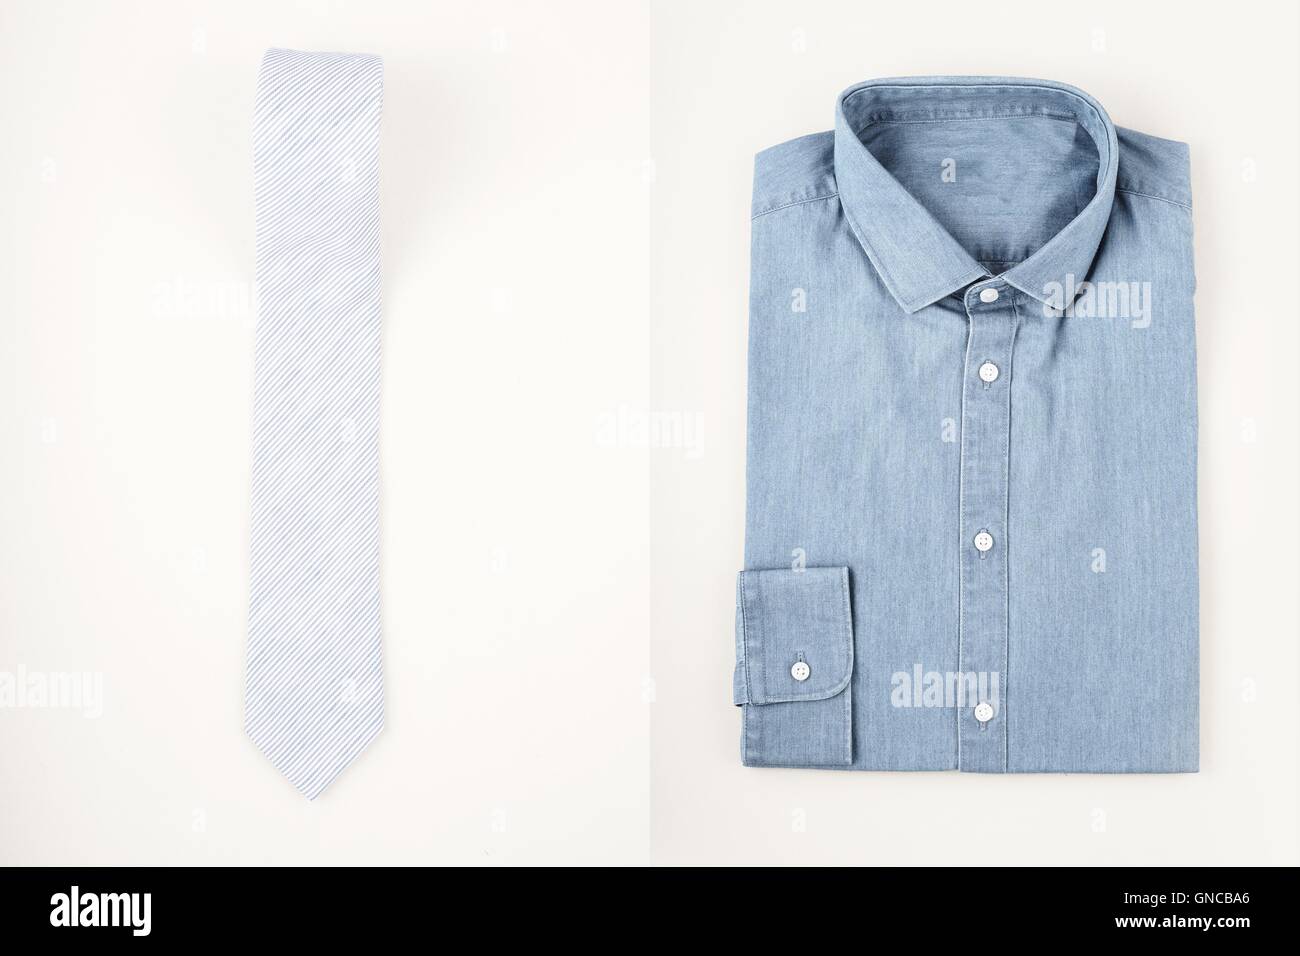 Mode de mens set - chemise et cravate Banque D'Images